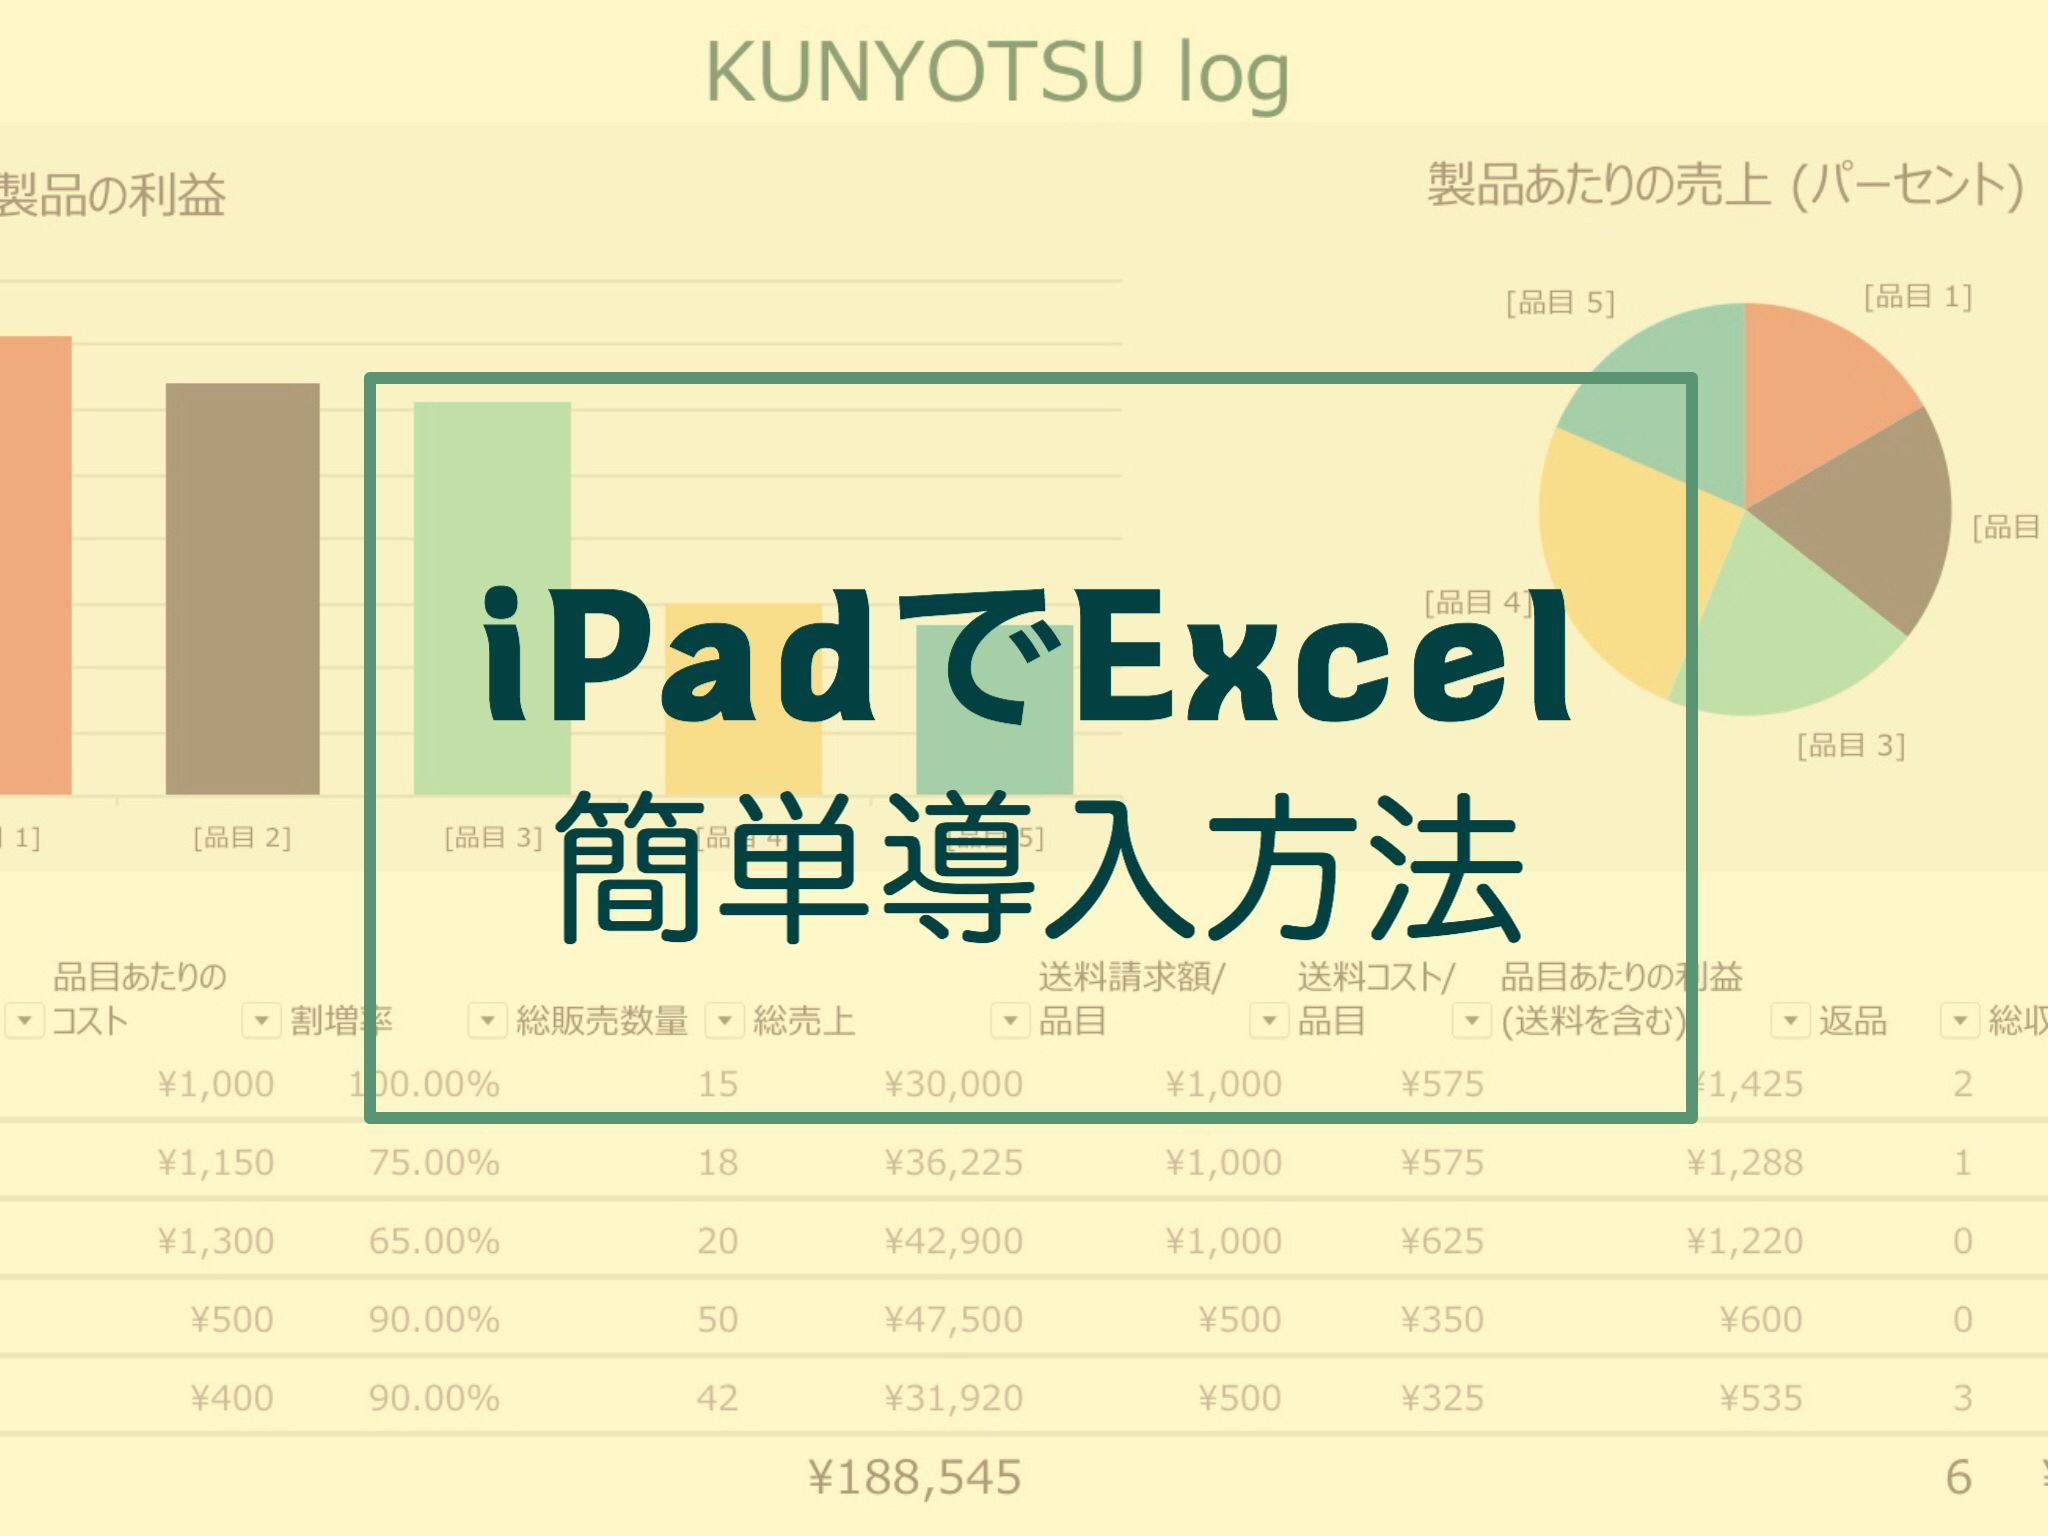 Ipad Excel アイパッドでエクセルを使う方法を解説 Kunyotsu Log